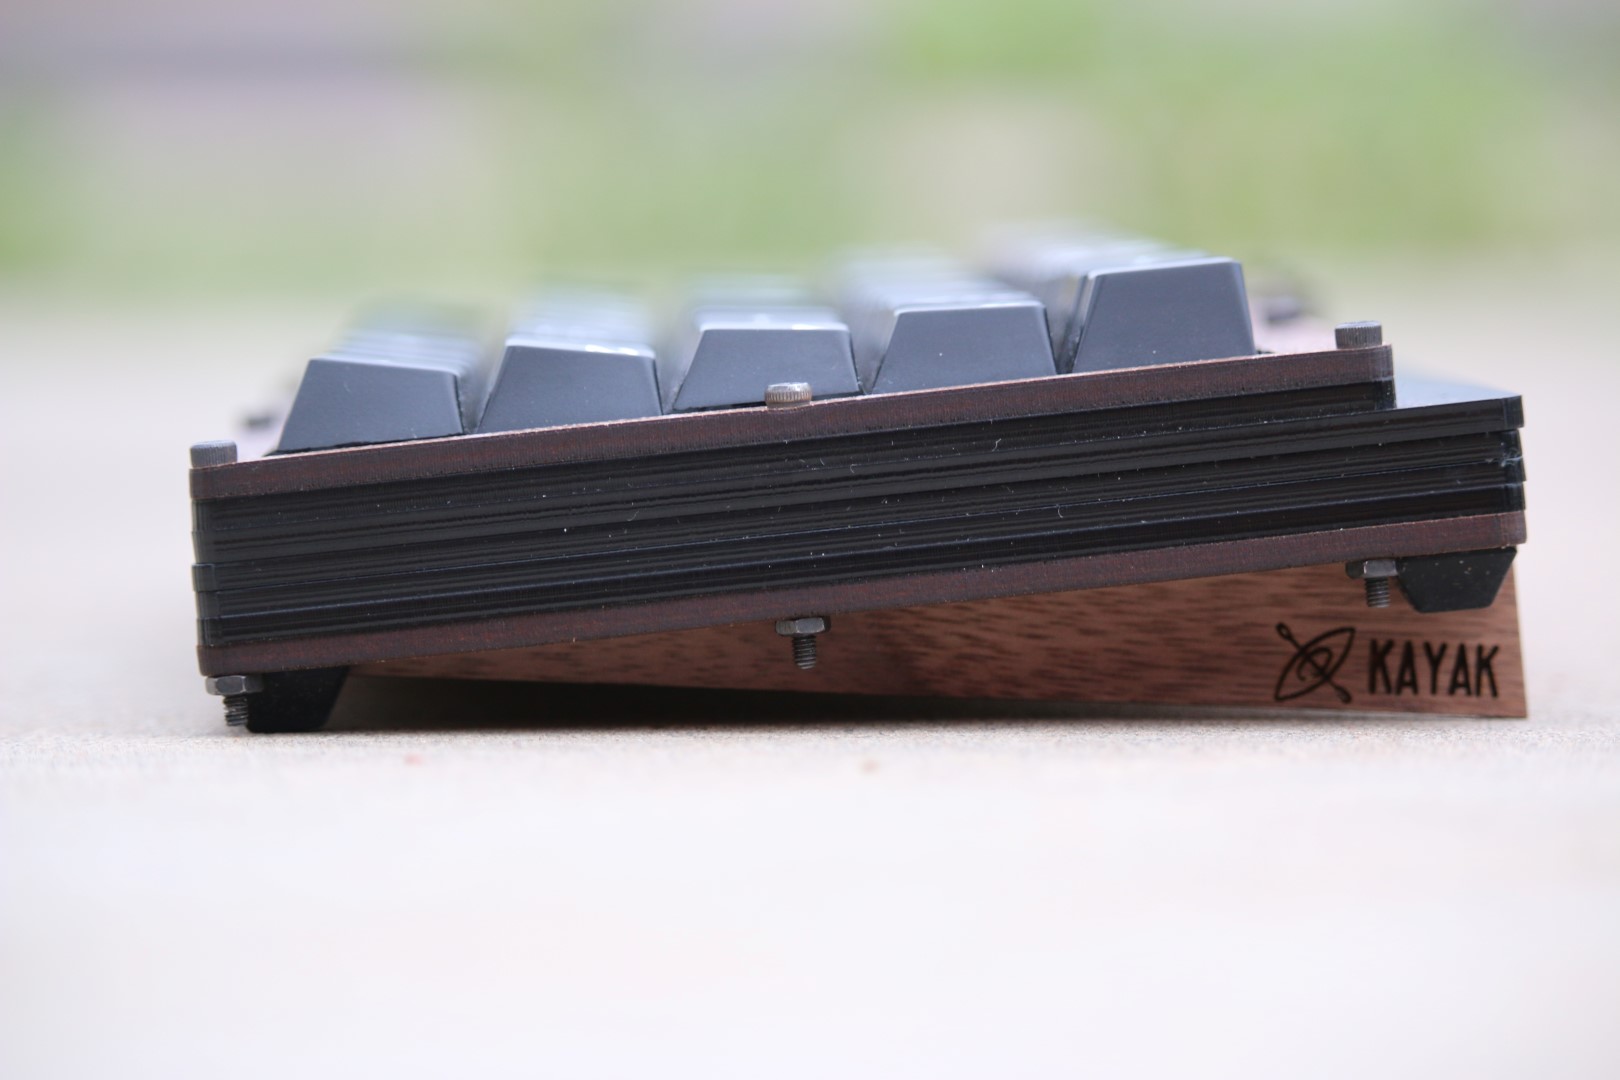 65% kayak keyboard